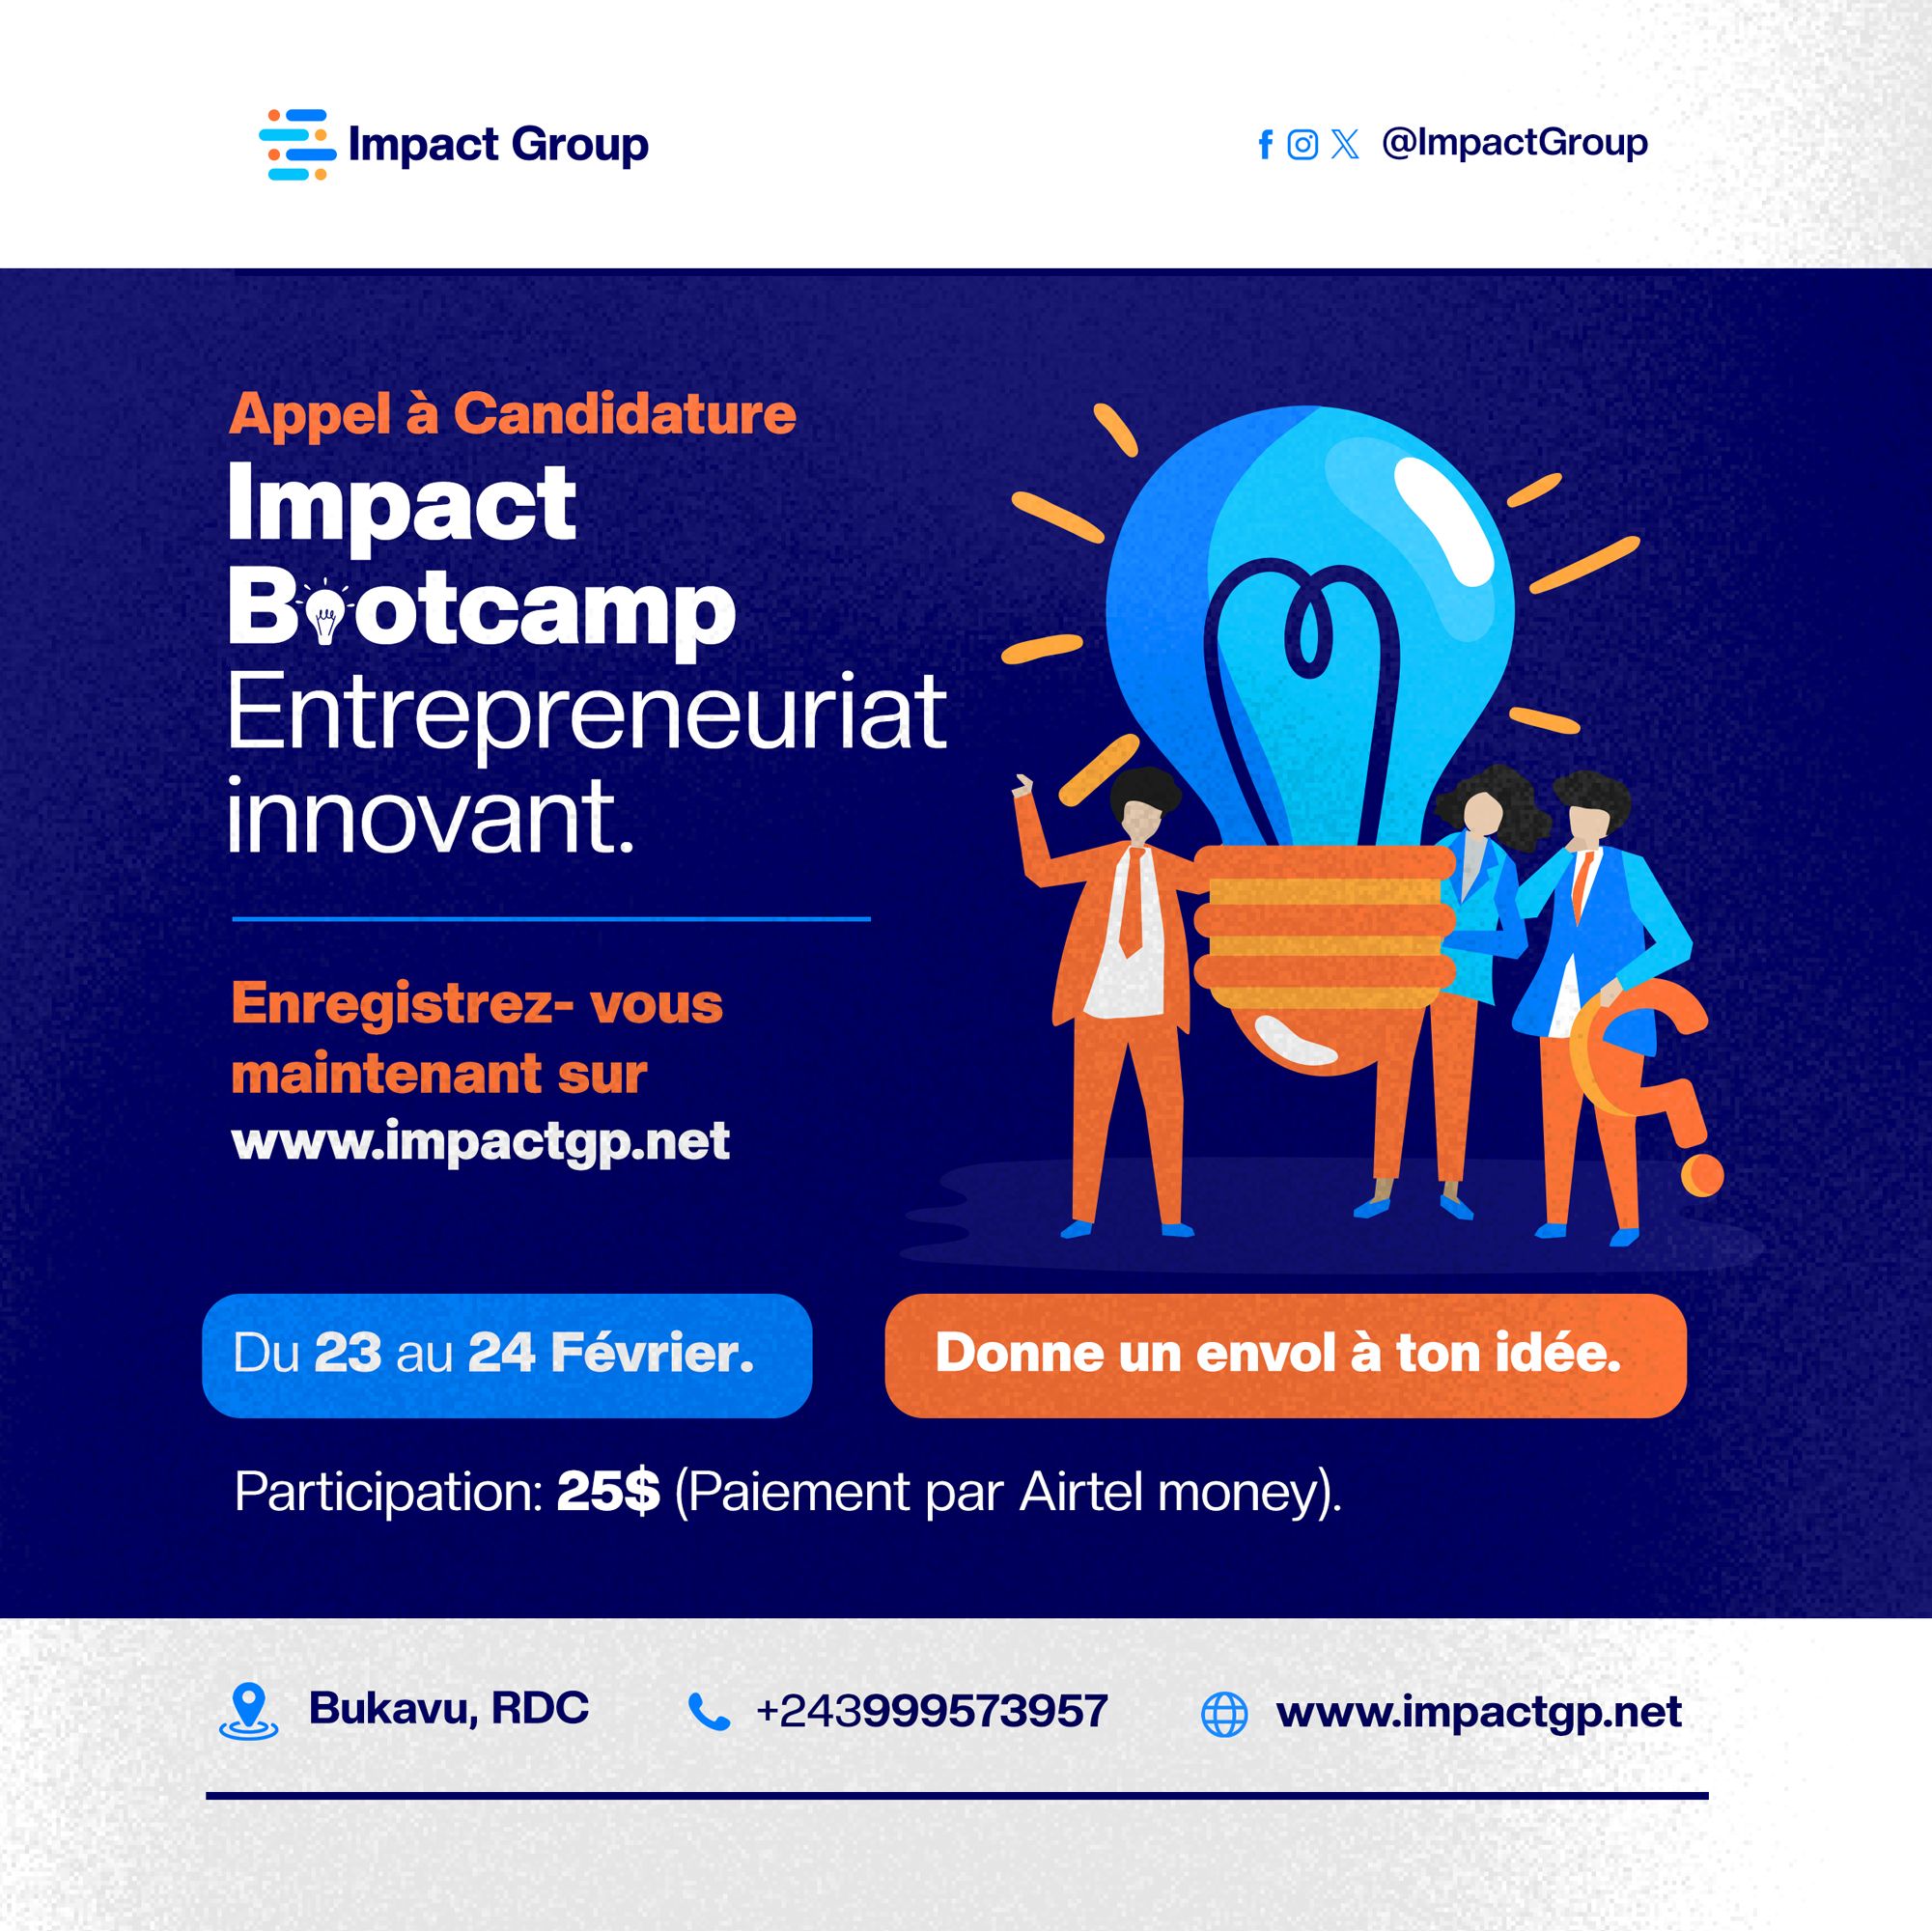 Bootcamps Entrepreneurial